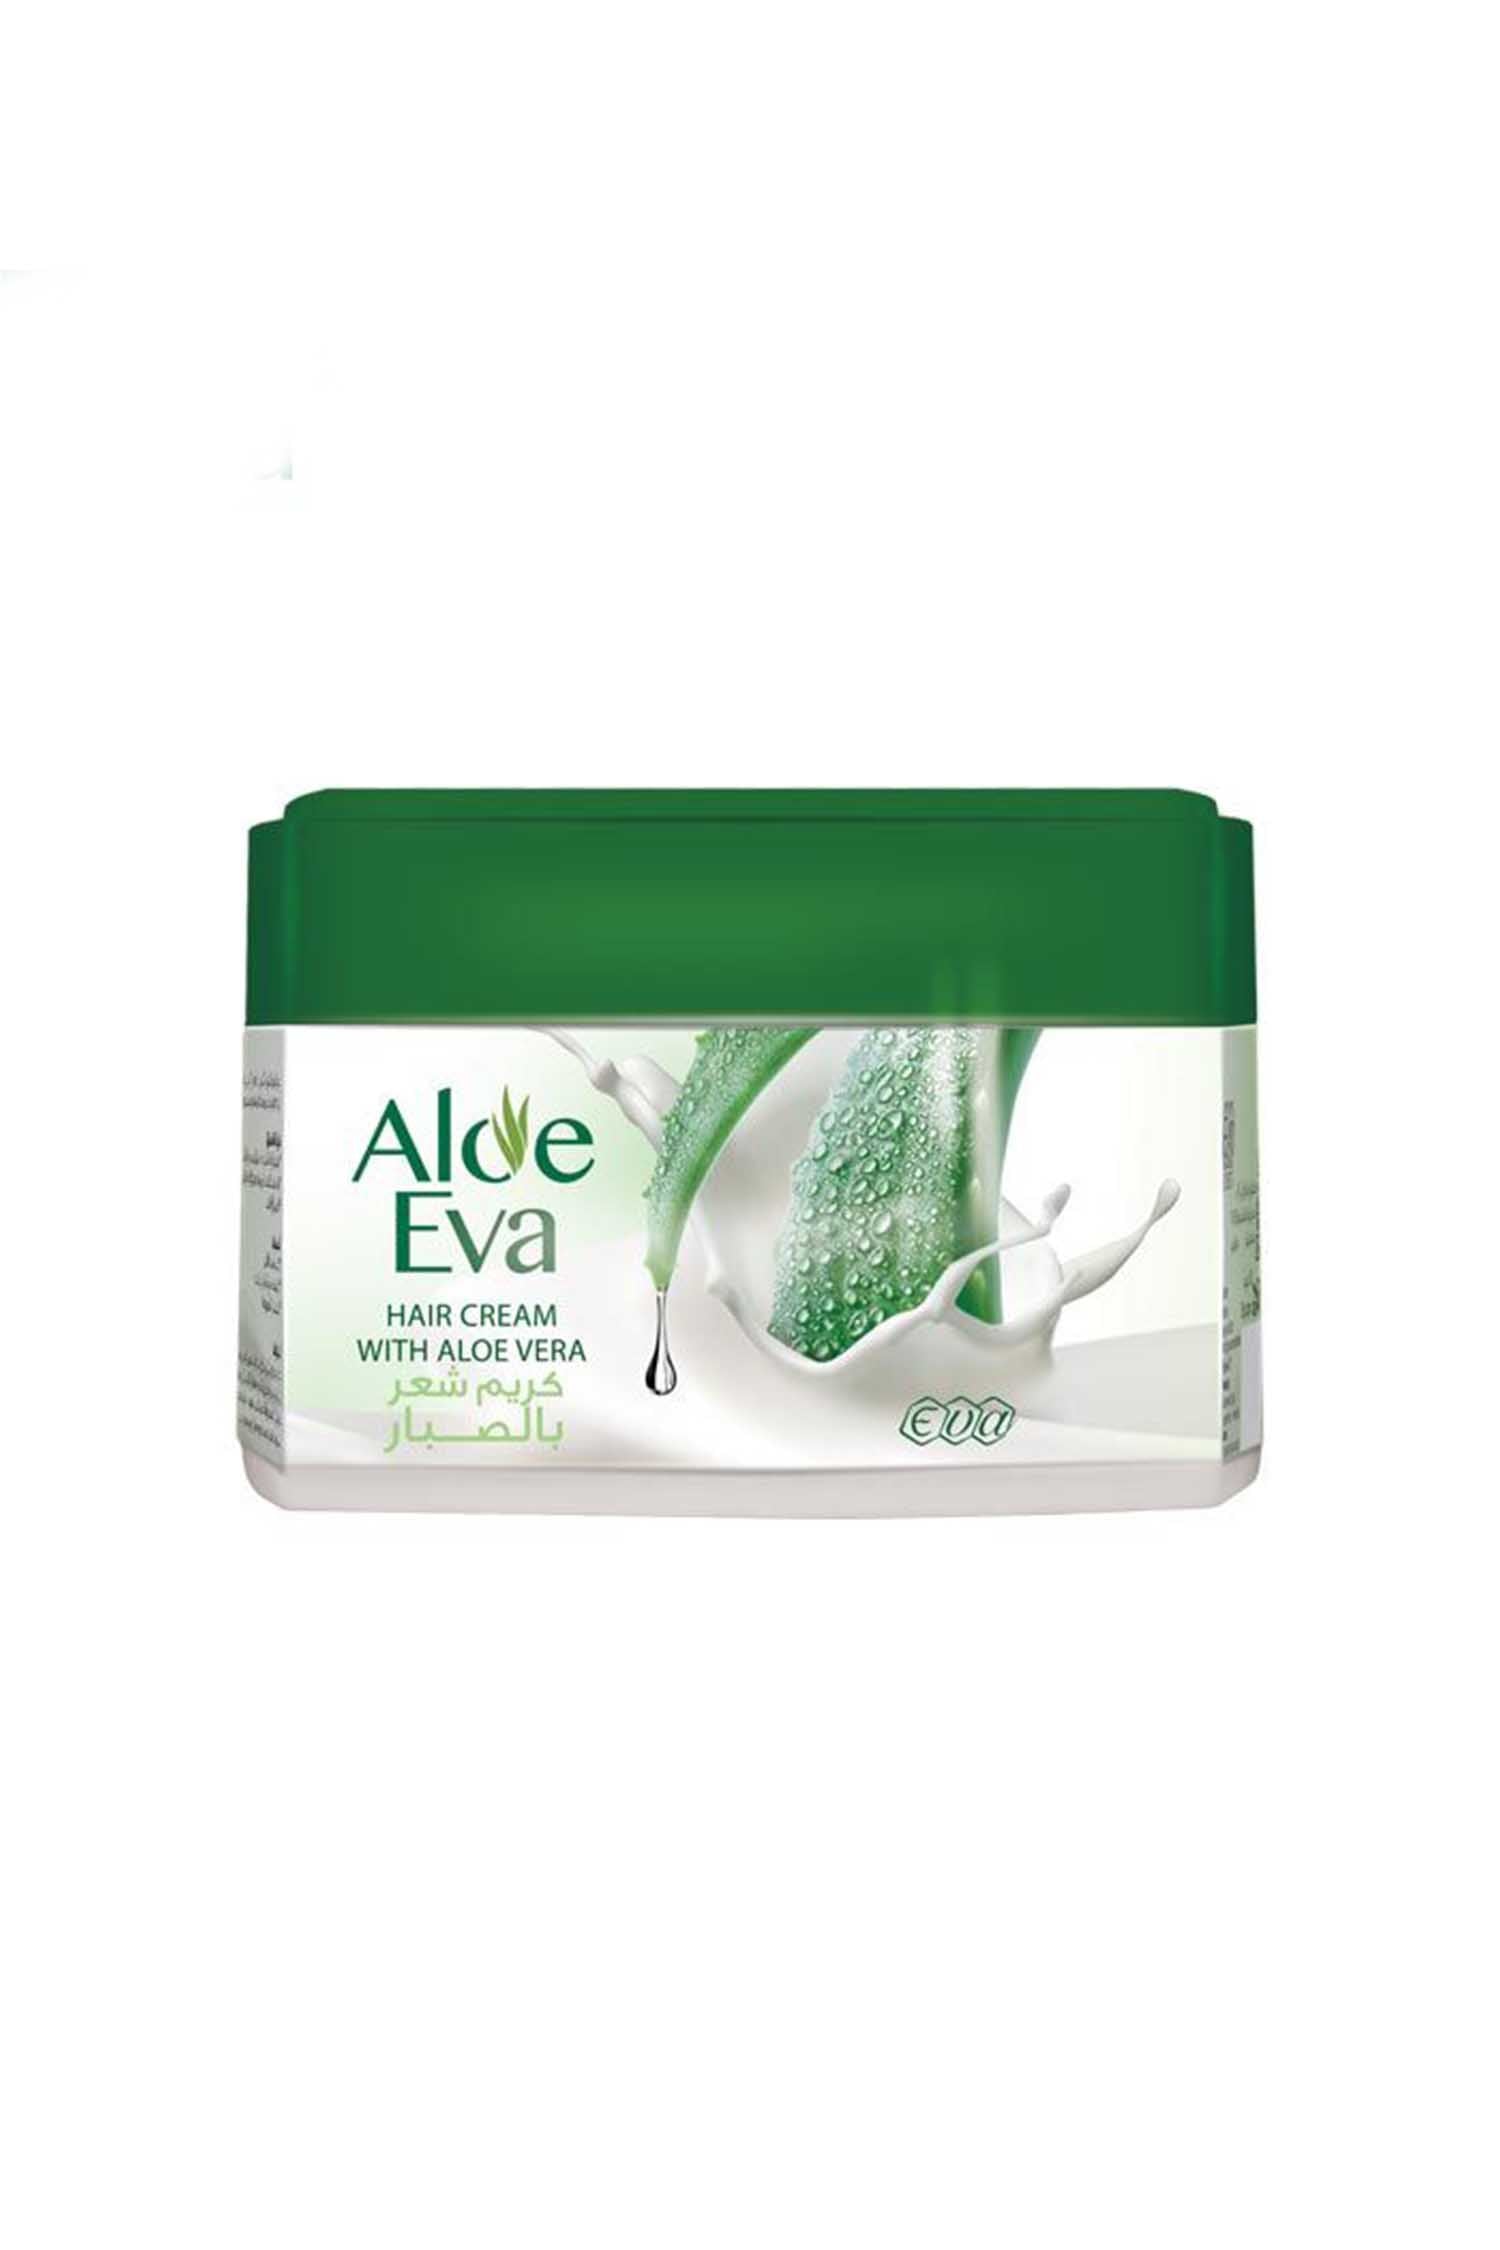 Aloe Eva Hair cream with Aloe Vera 45gm